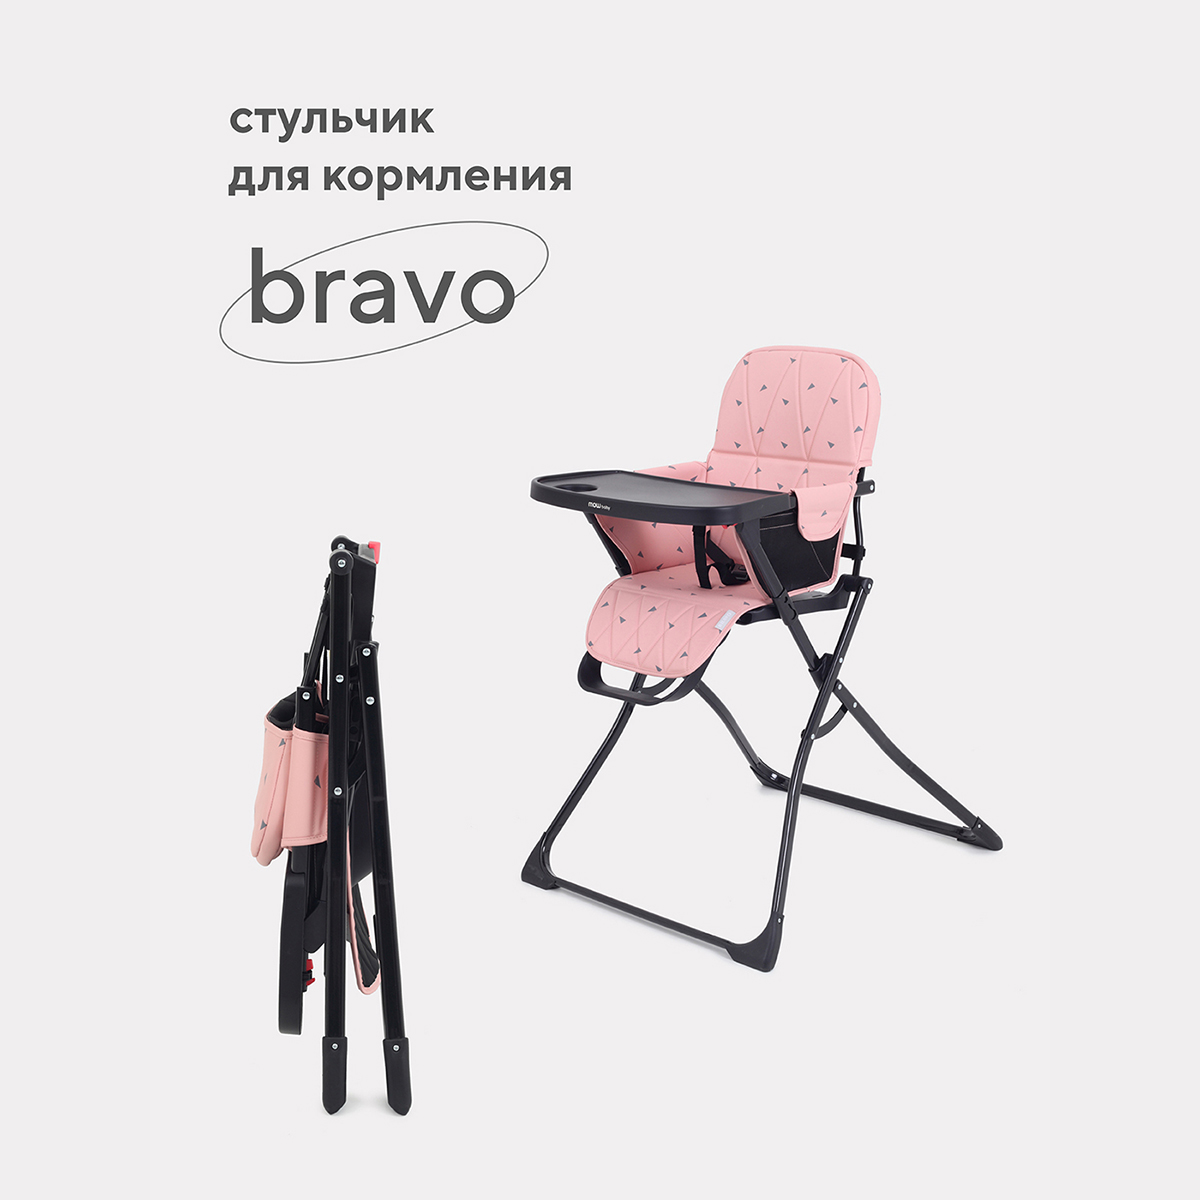 Стульчик для кормления Mowbaby Bravo RH510_cloud pink стульчик для кормления rant vita cloud pink